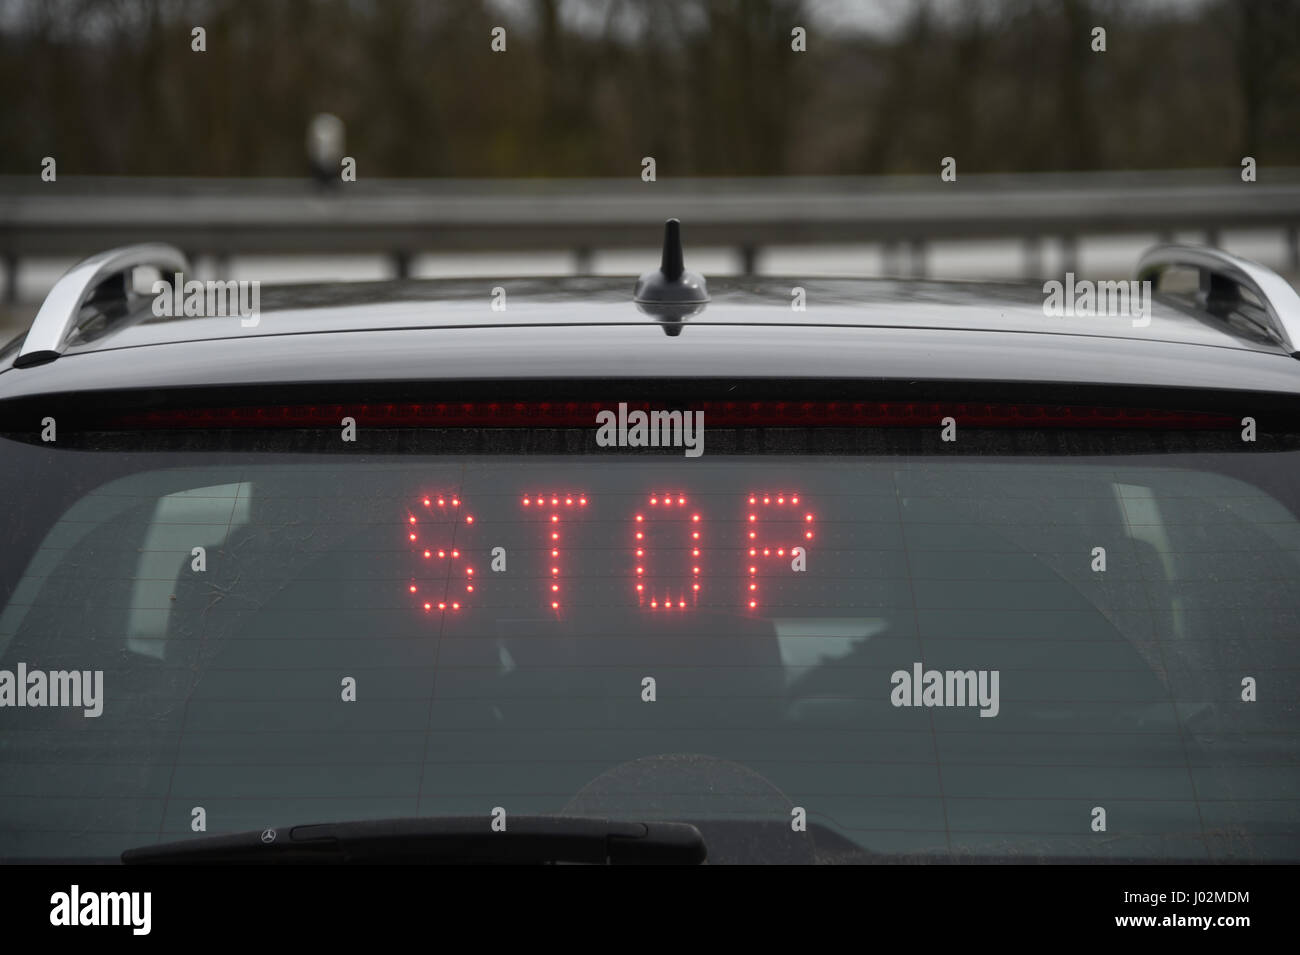 Polizei Auto mit dem deutschen Wort für Stop! In der Anzeige auf blau  umgestellt werden, Rundumleuchte Stockfotografie - Alamy